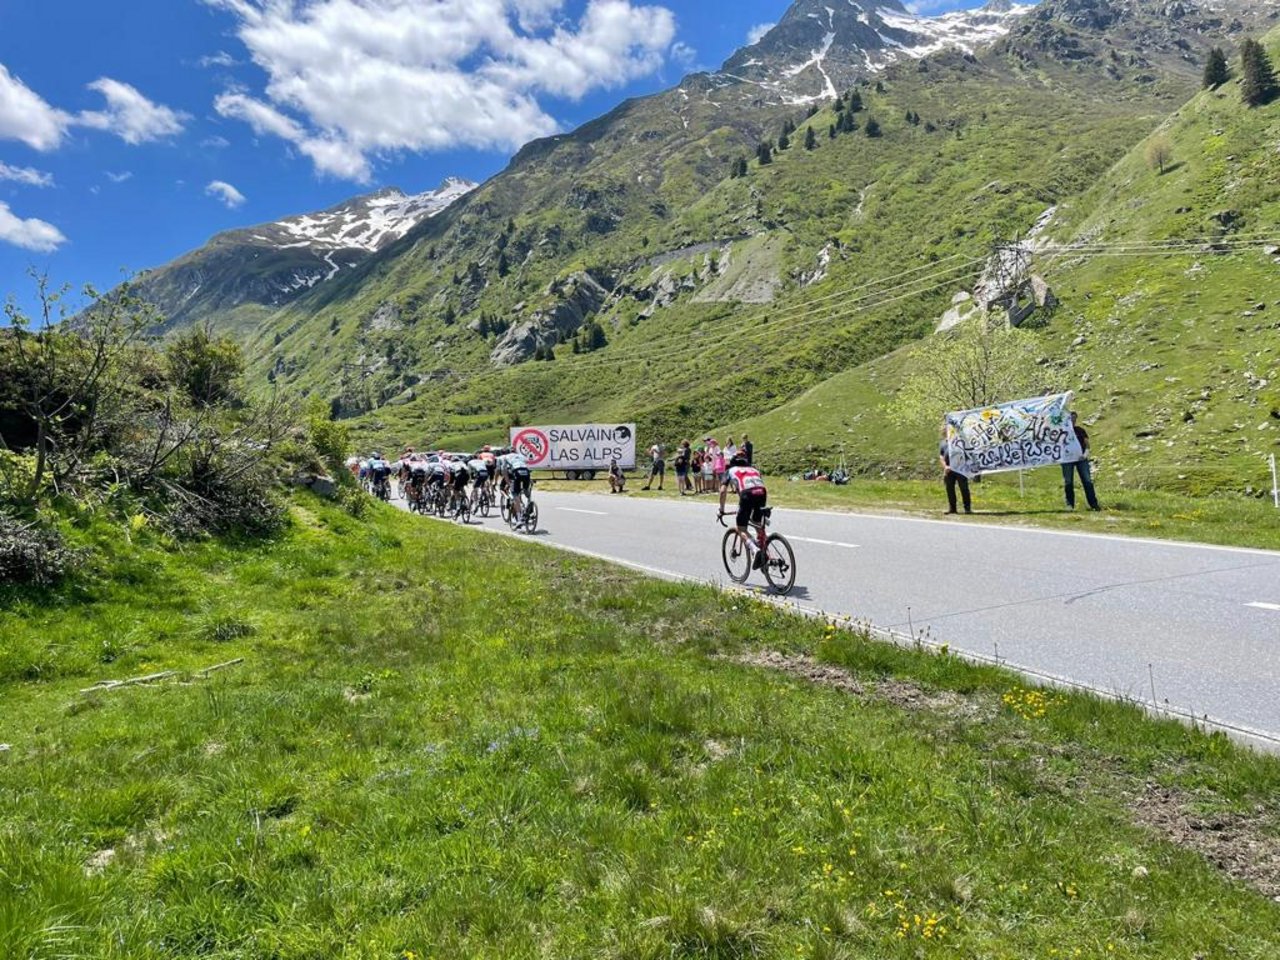 Der friedliche Protest sollte auf die Missstände in den Alpenregionen aufmerksam machen. Hier ein Bild aus Graubünden.